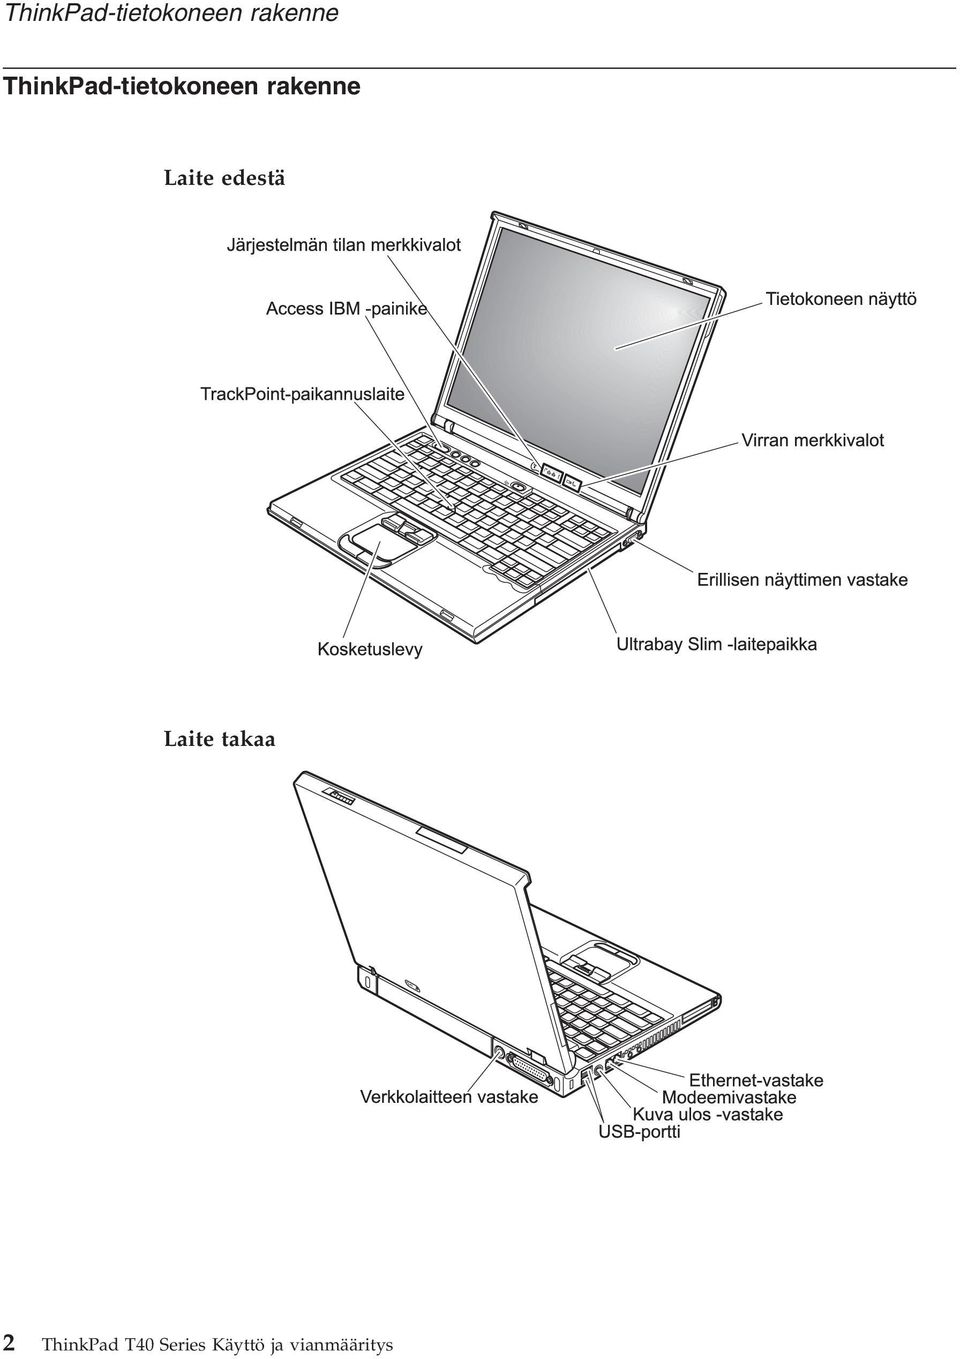 ThinkPad T40 Series Käyttö ja